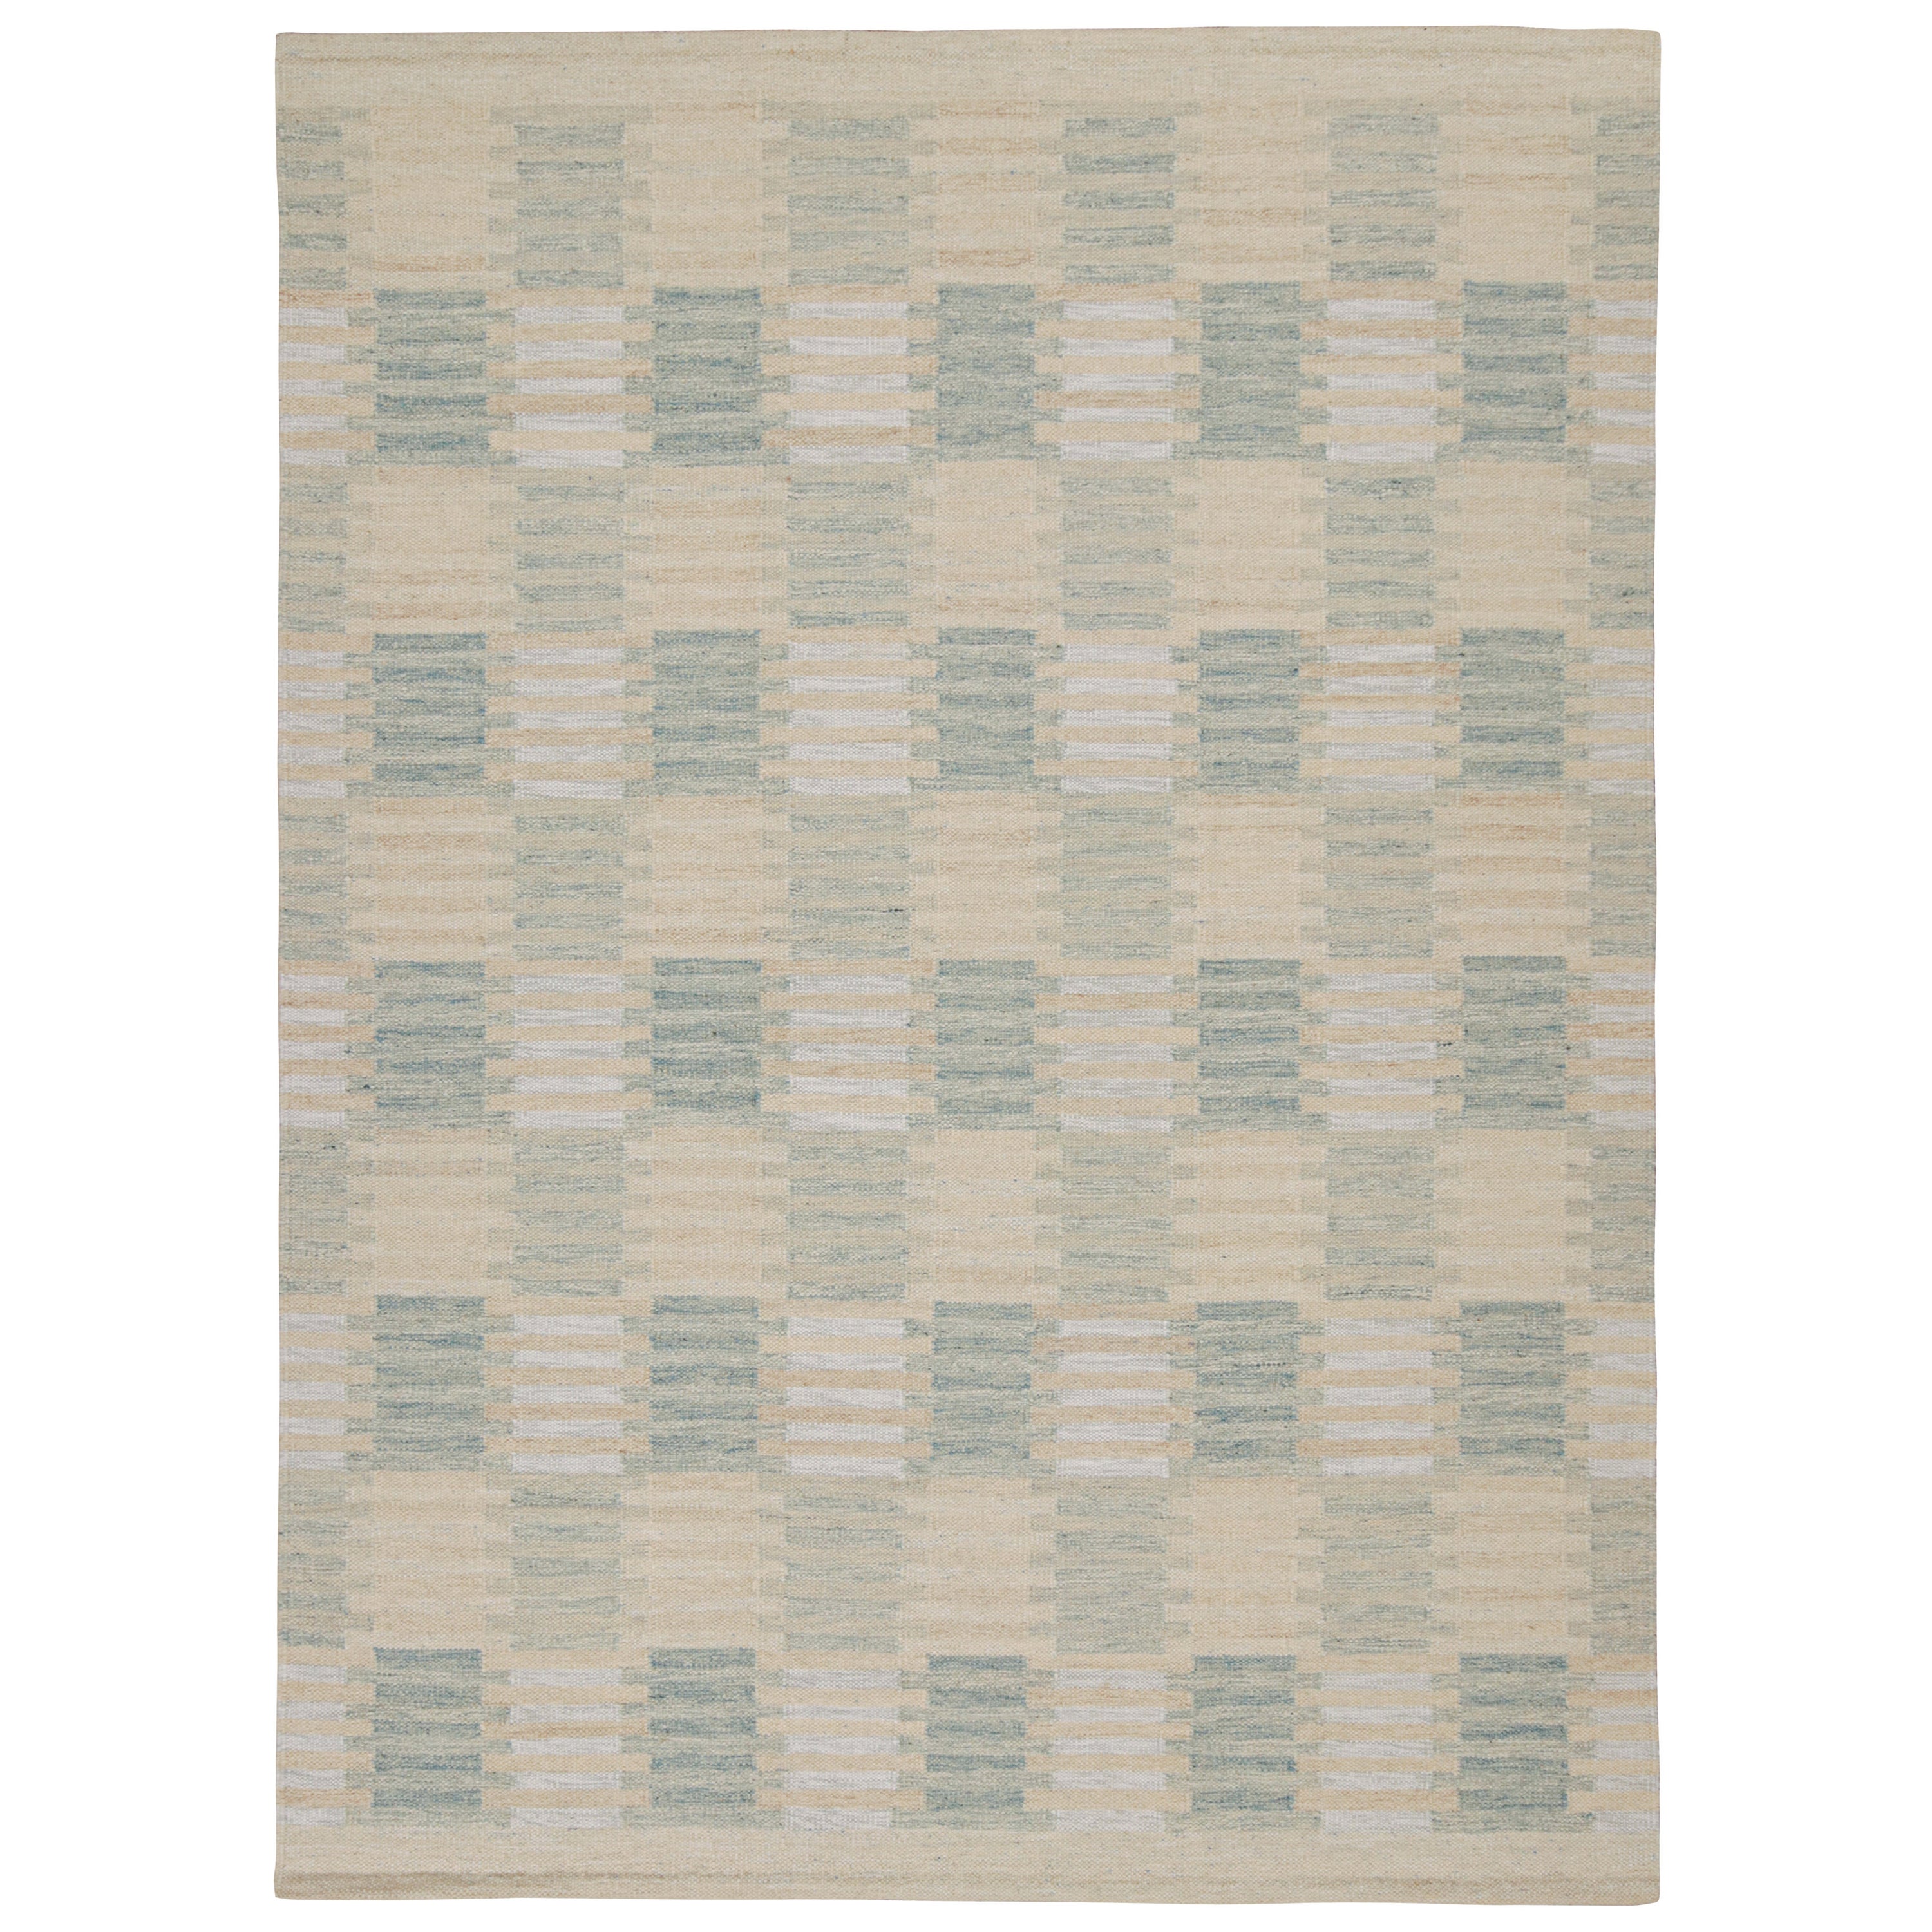 Rug & Kilim's Skandinavischer Stil Maßgefertigter Kilim-Teppich in Blau- und Beige-Mustern